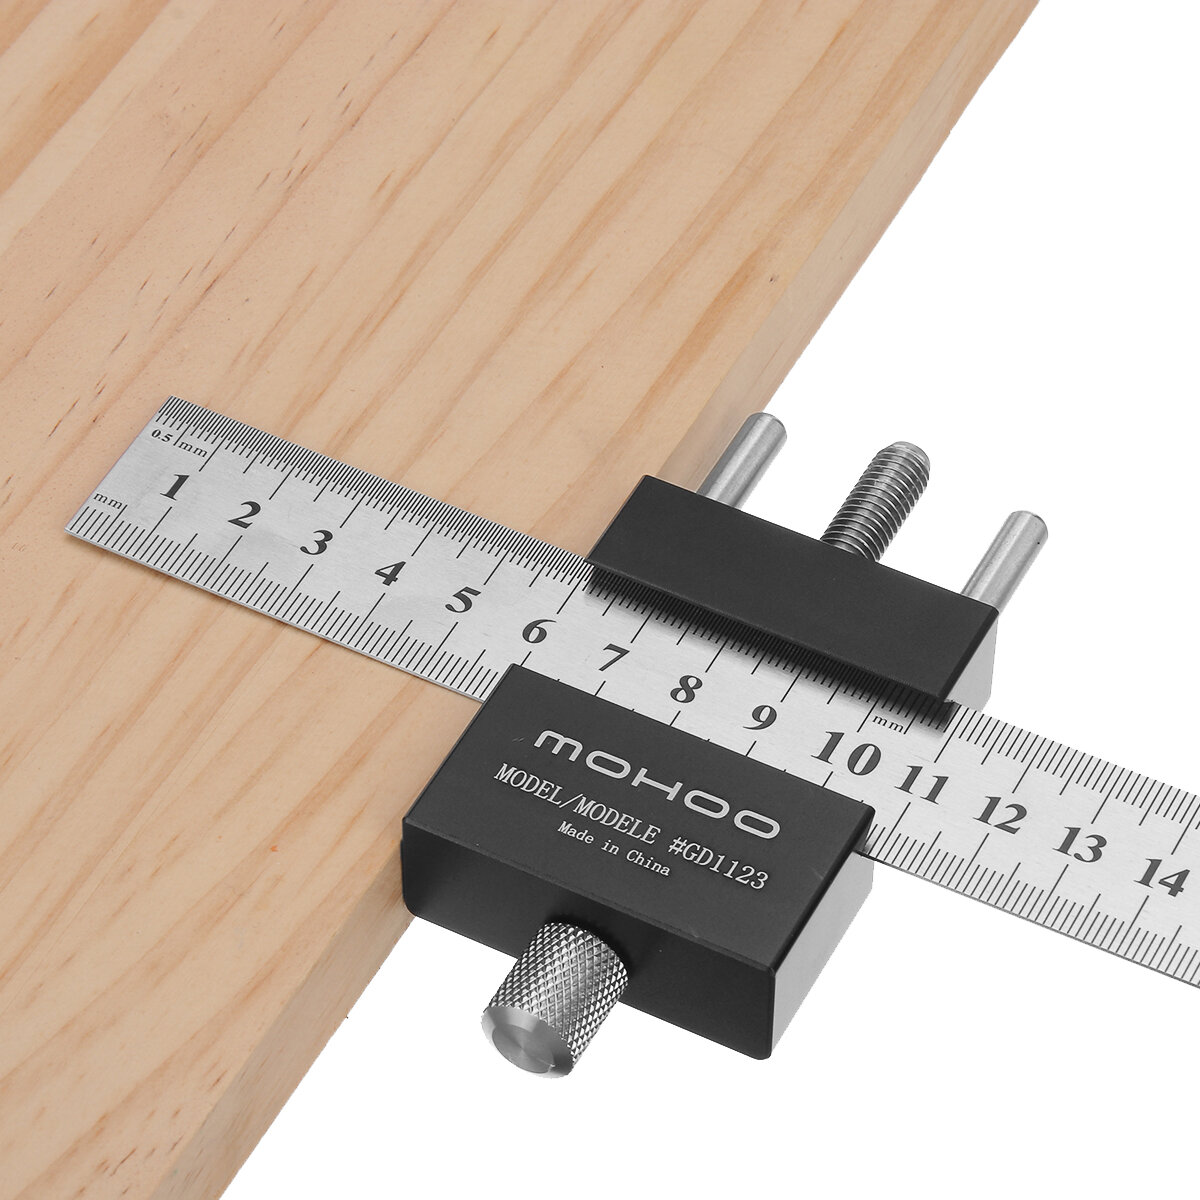 

Mohoo Steel Ruler Positioning Block Angle Scriber Line Marking Gauge for Ruler Locator Carpentry Scriber Measuring Woodw